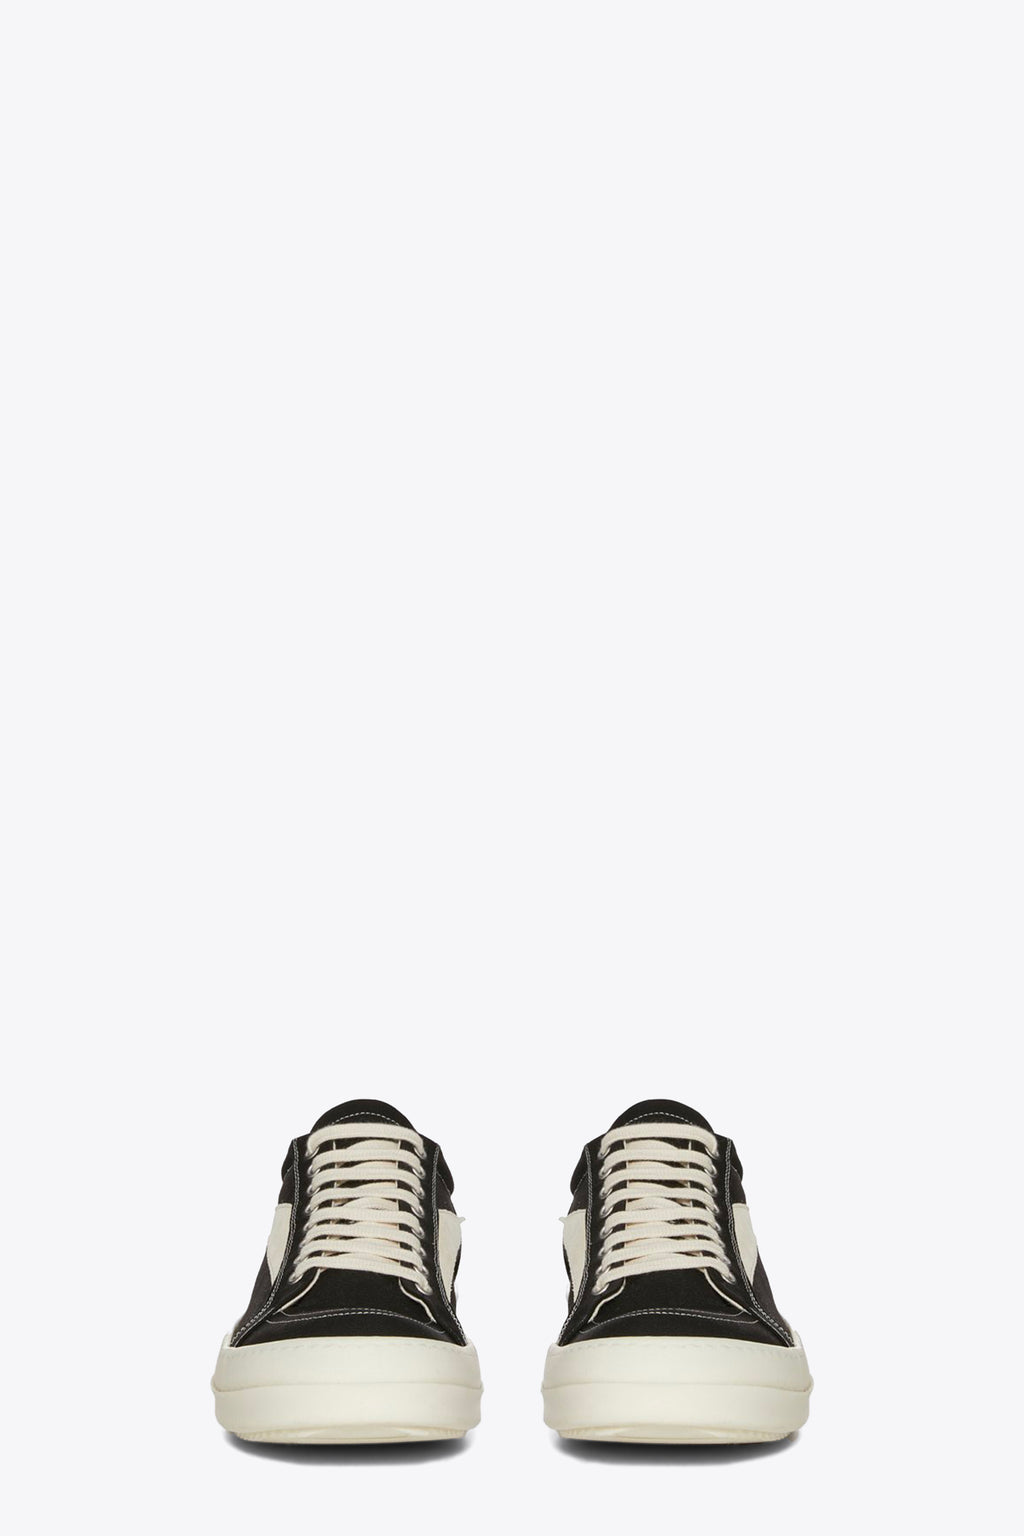 alt-image__Black-cotton-lace-up-low-sneaker---Vintage-sneaks-